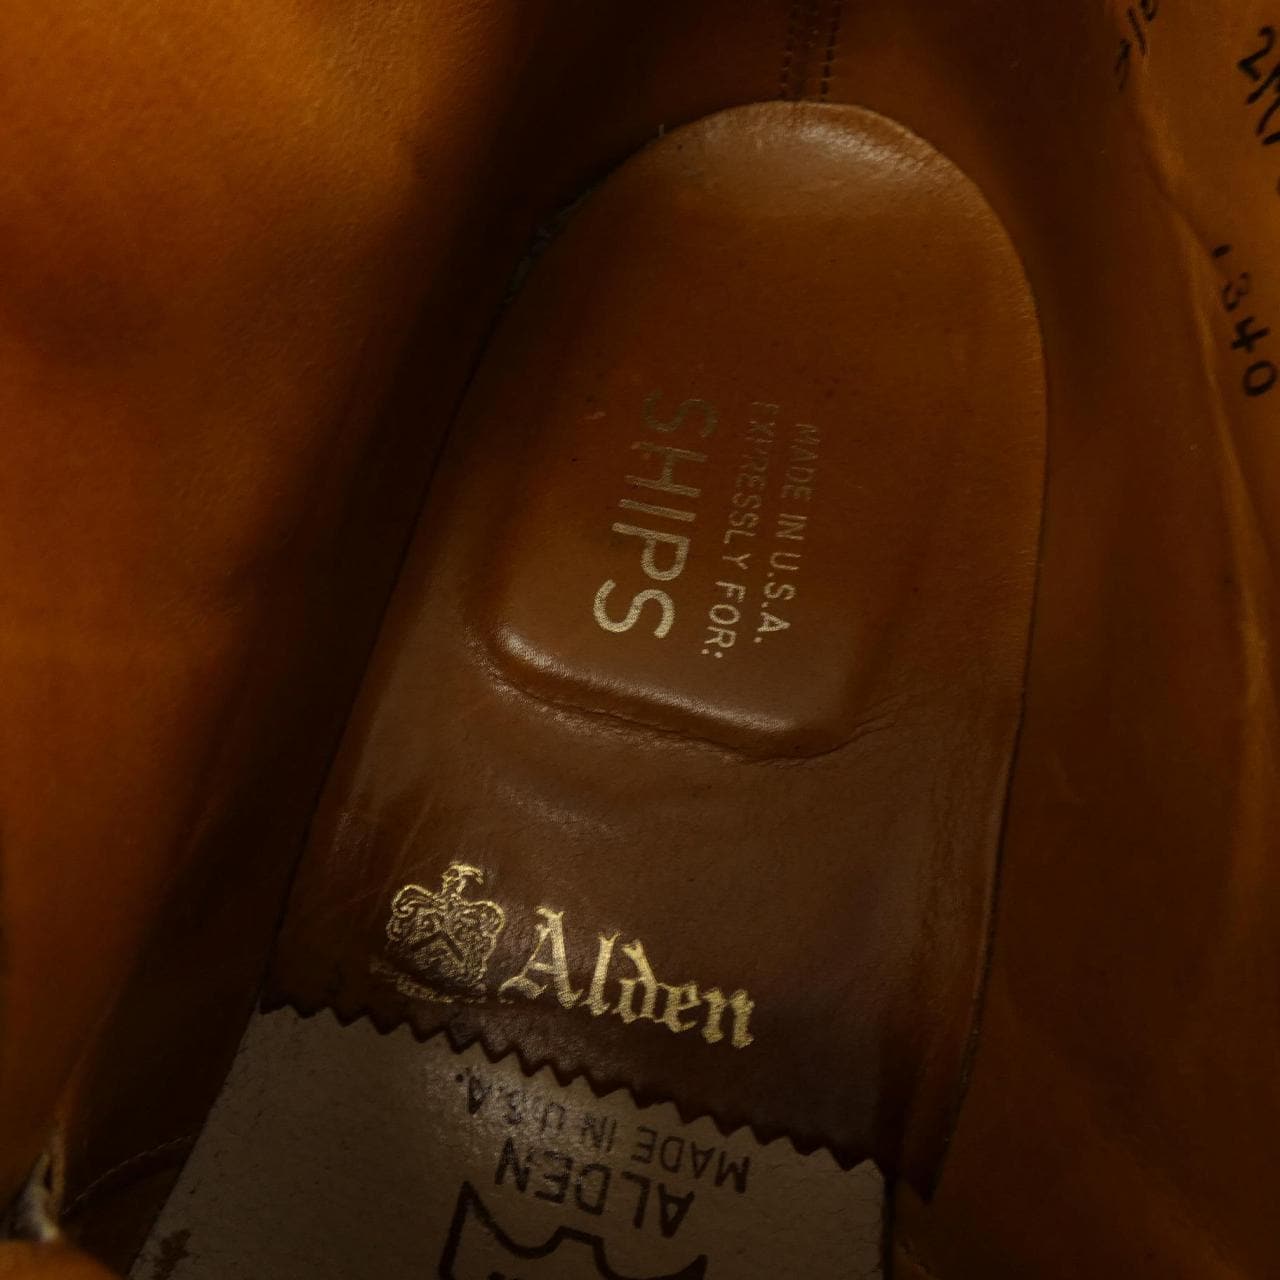 Alden ALDEN boots